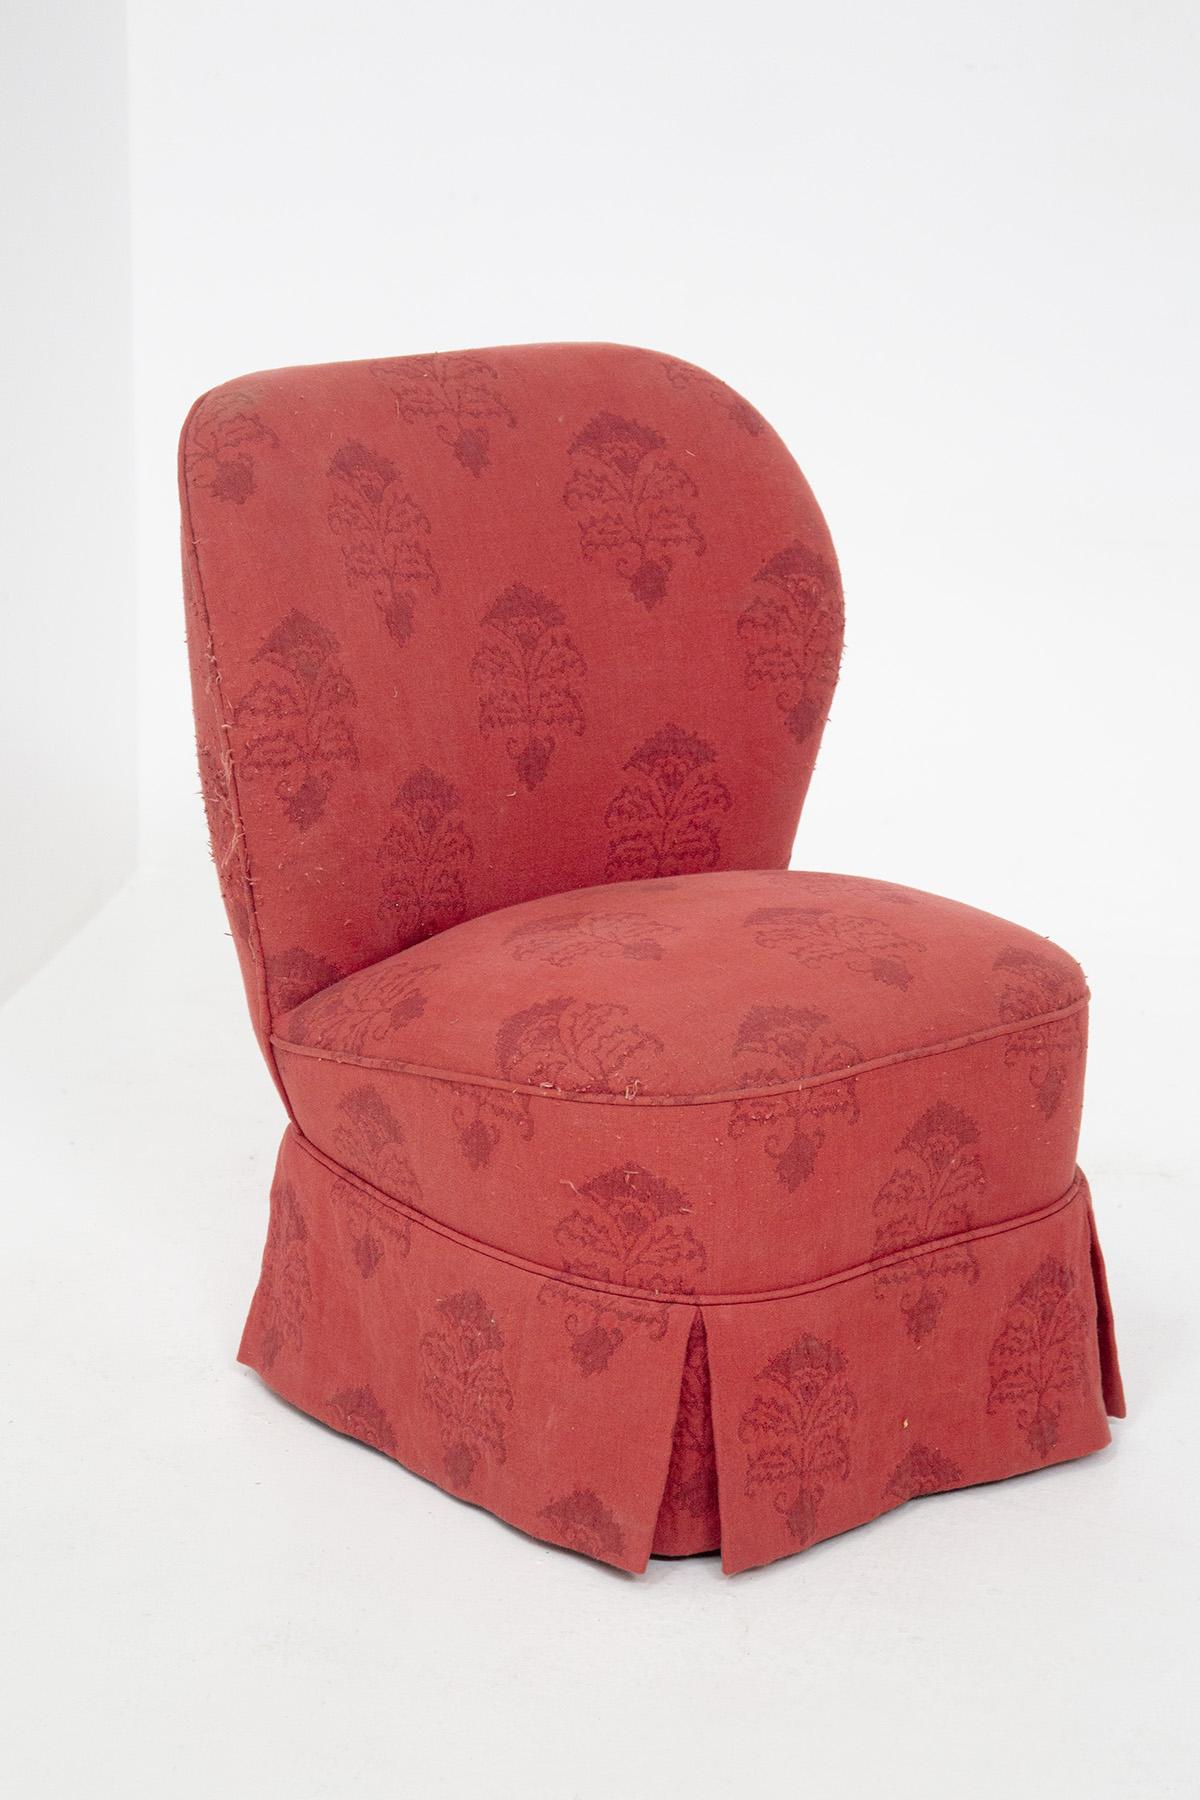 Paire de fauteuils des années 50 en tissu rouge, avec des détails en damas rouge foncé. L'assise est très haute et souple, dans le même tissu. Le dossier est légèrement incurvé et arrondi. La base du fauteuil est ornée d'une frange unique, avec des